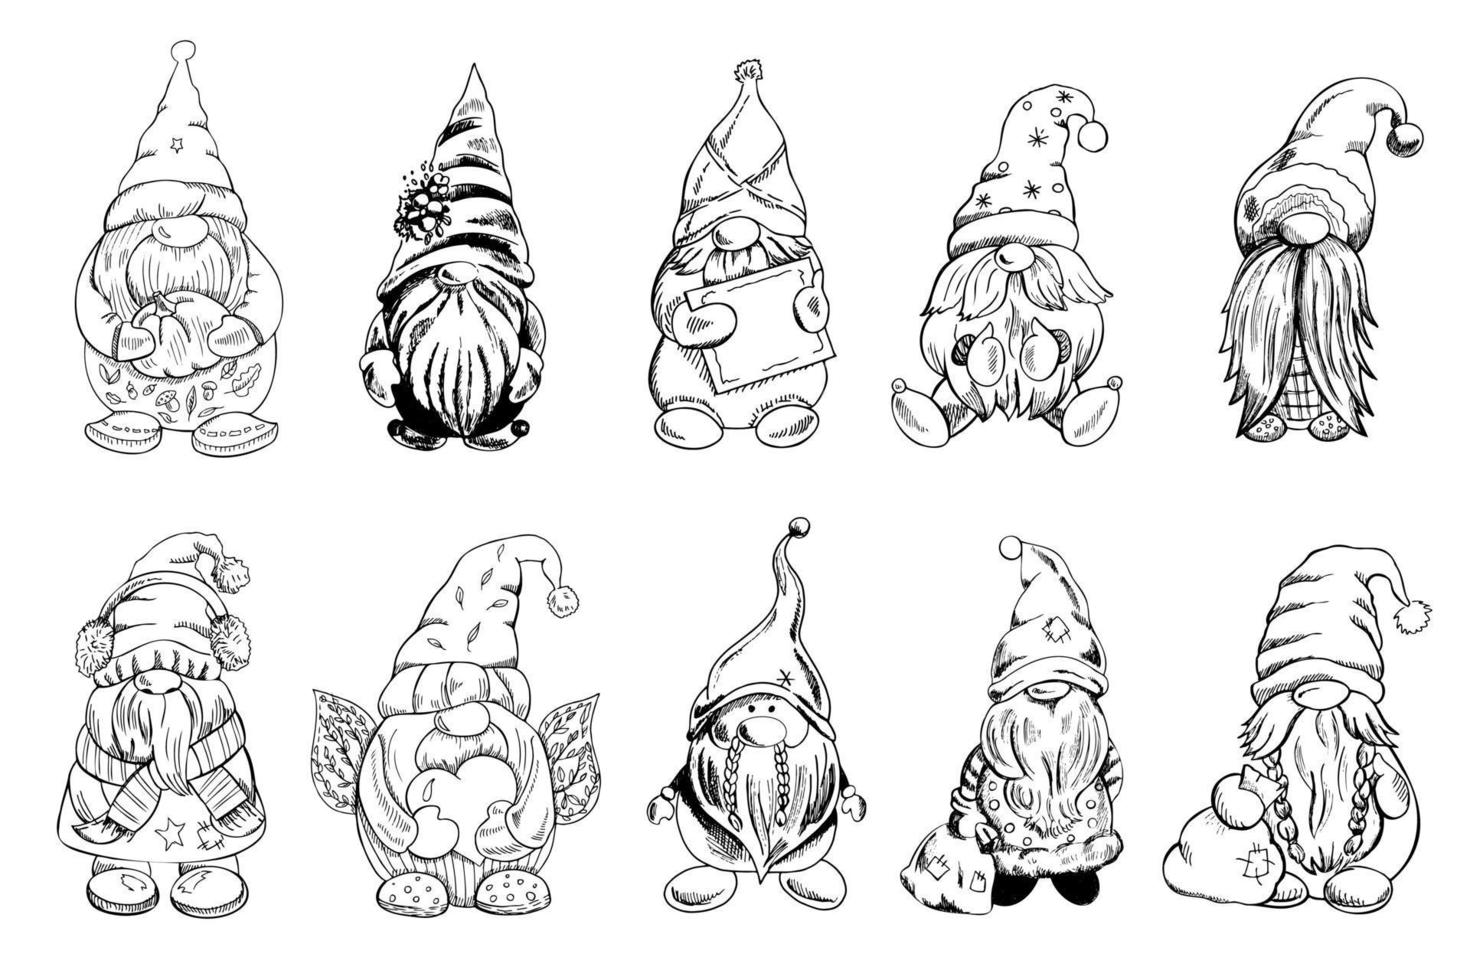 eine reihe handgezeichneter gnome für das neue jahr, valentinstag, halloween. Vintage-Vektor-Illustration. neues Jahr und Weihnachtsillustration. neues jahr, valentinstag, halloween-illustration. vektor